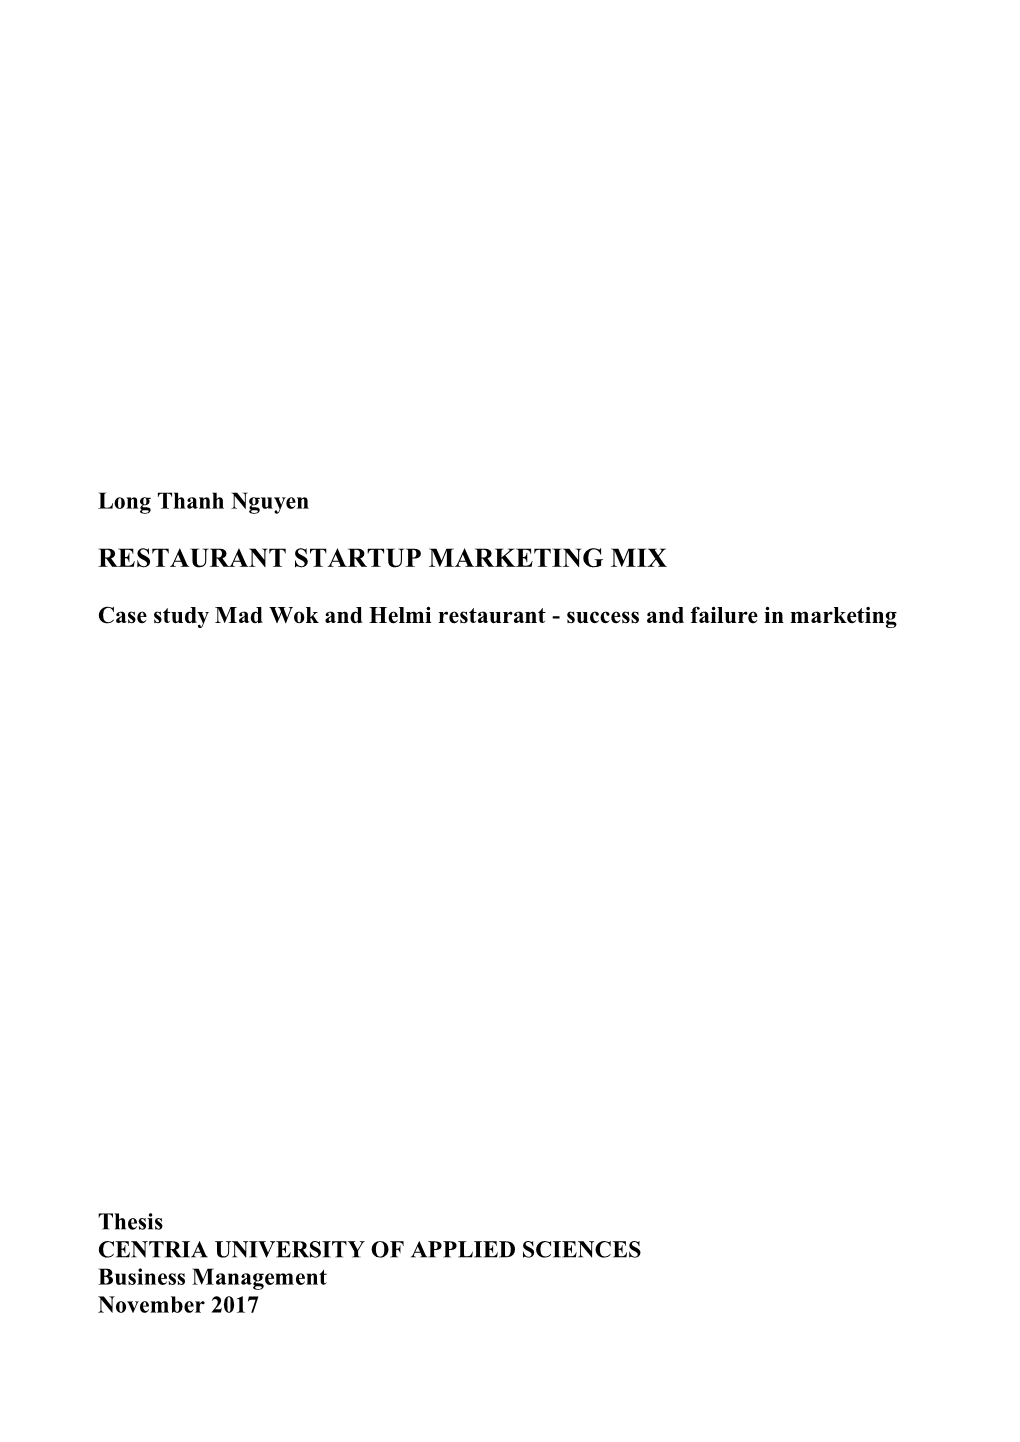 Restaurant Startup Marketing Mix